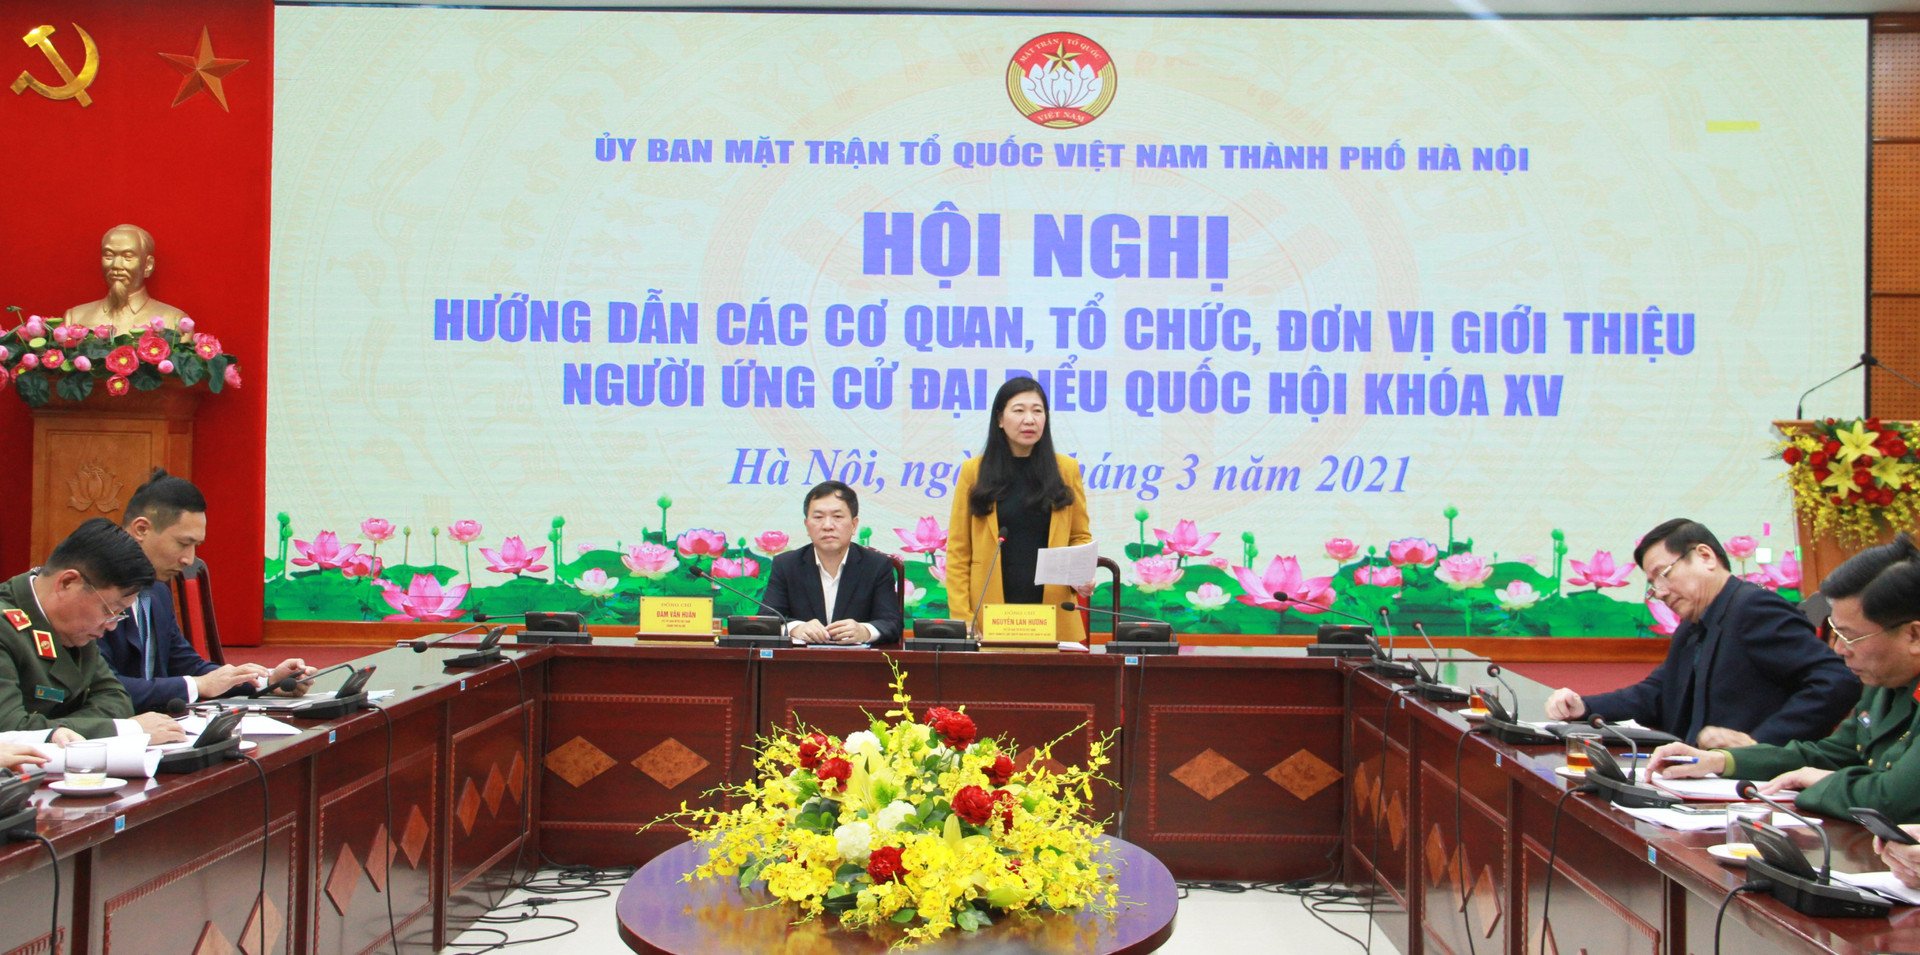 Bà Nguyễn Lan Hương, Chủ tịch UBMTTQ thành phố Hà Nội phát biểu tại hội nghị.